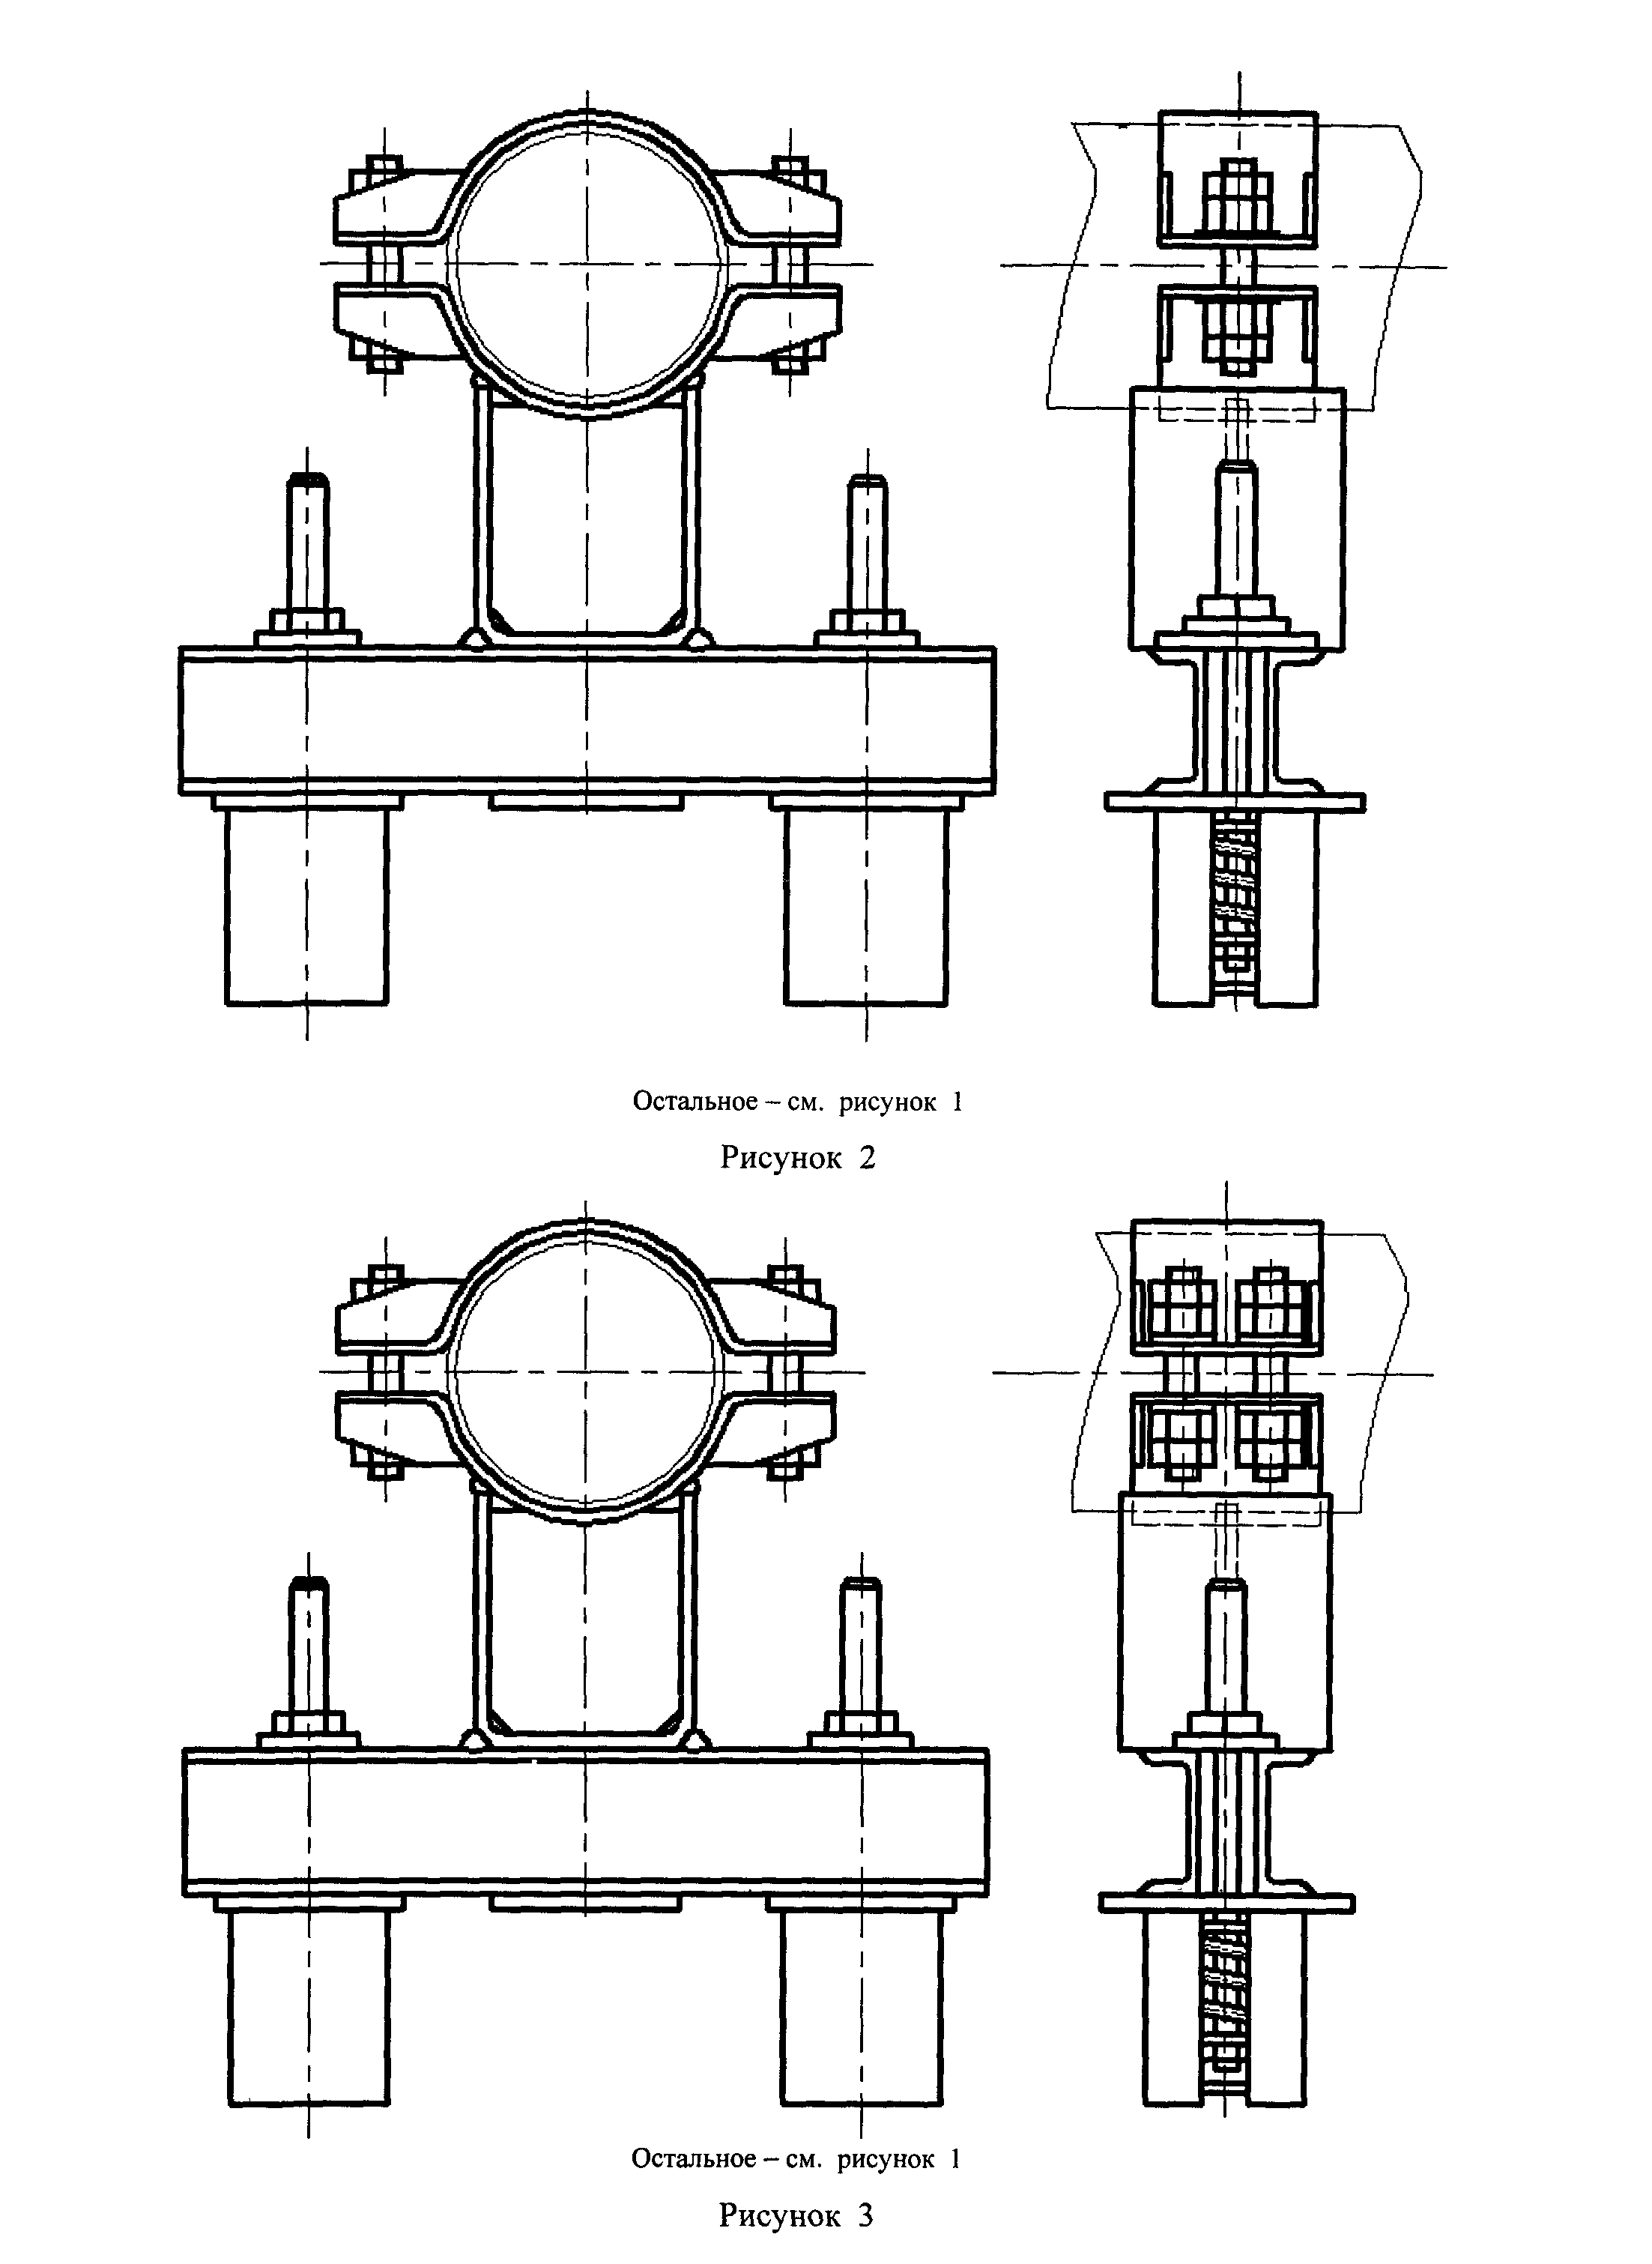 Рабочие чертежи 2. Подвески пружинные хомутовые на опорной балке ОСТ 24.125.122-01